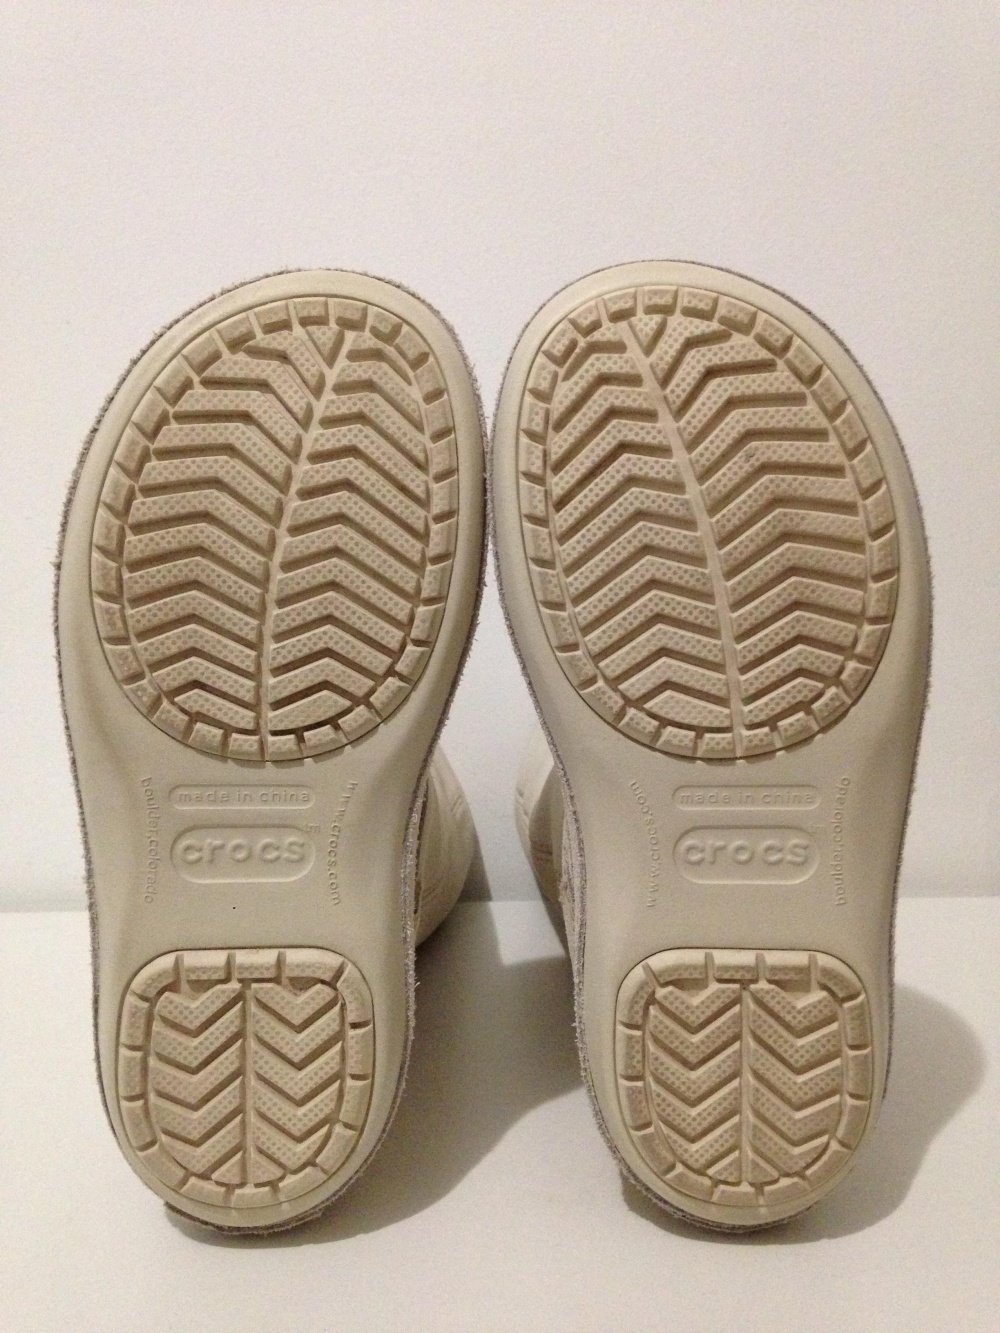 Сапоги " Crocs ", 38-39 размер